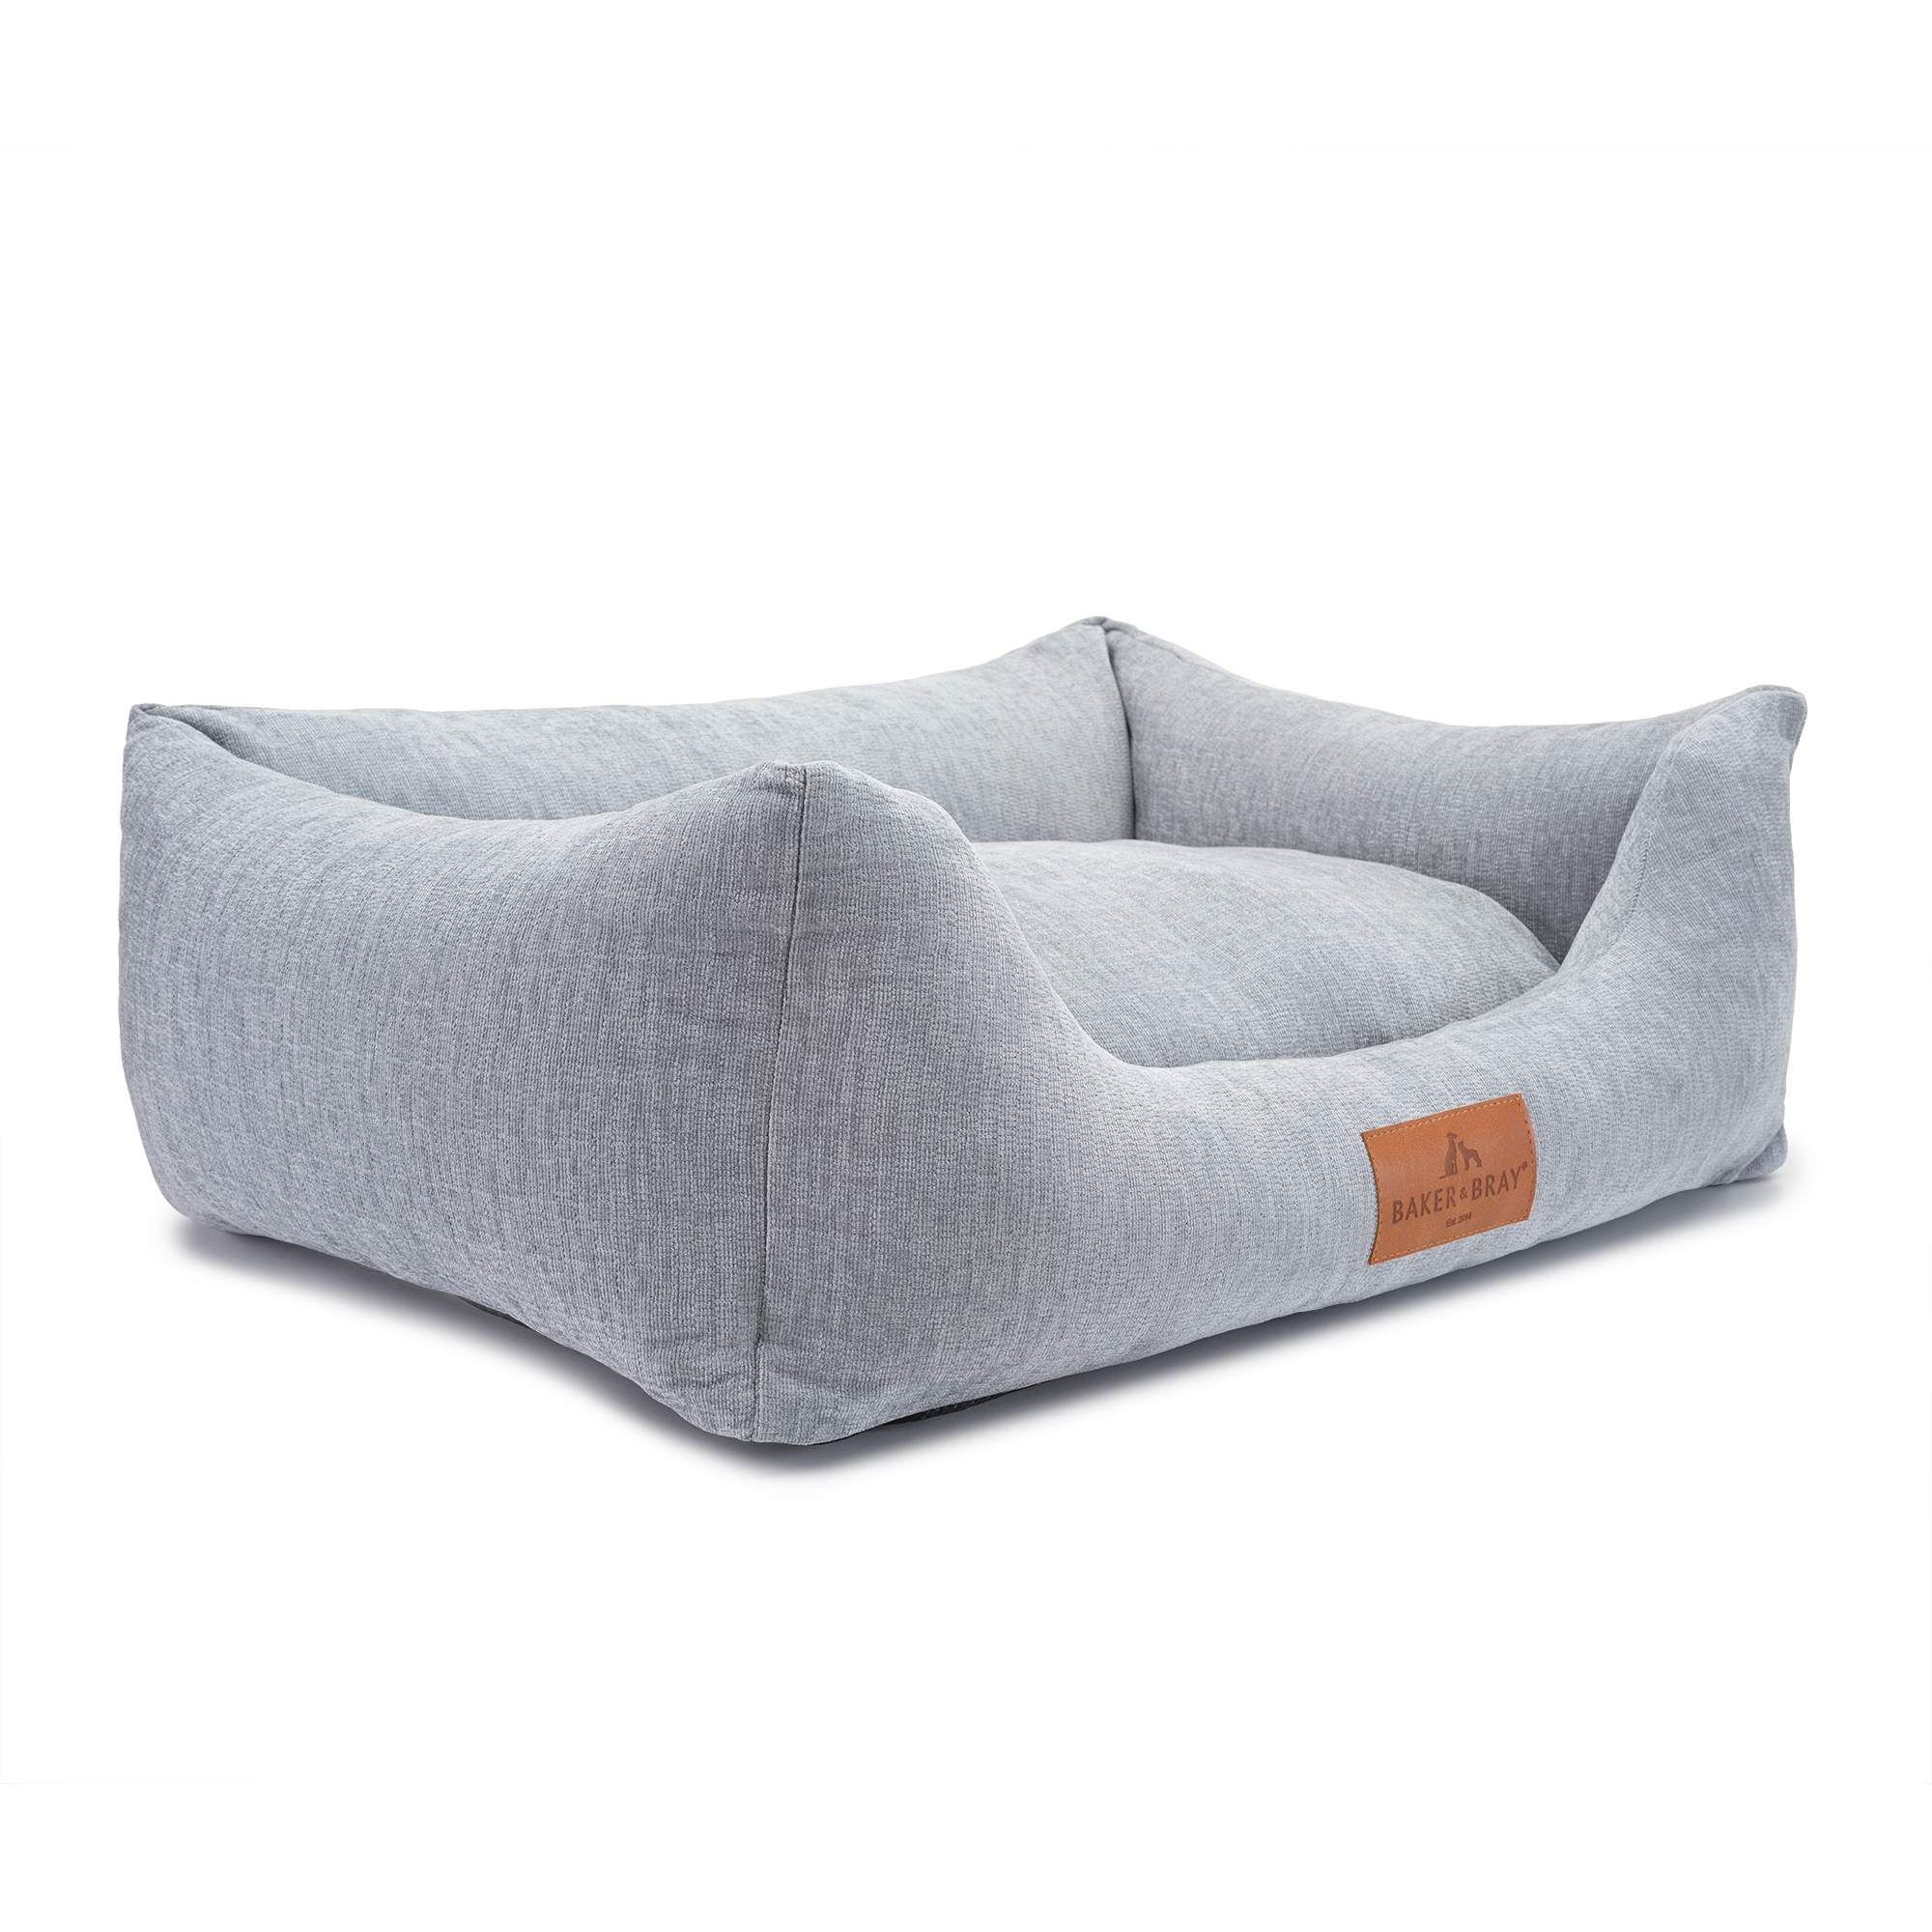 Eco Luxe Orthopaedic Luxury Dog Bed, Stone Grey